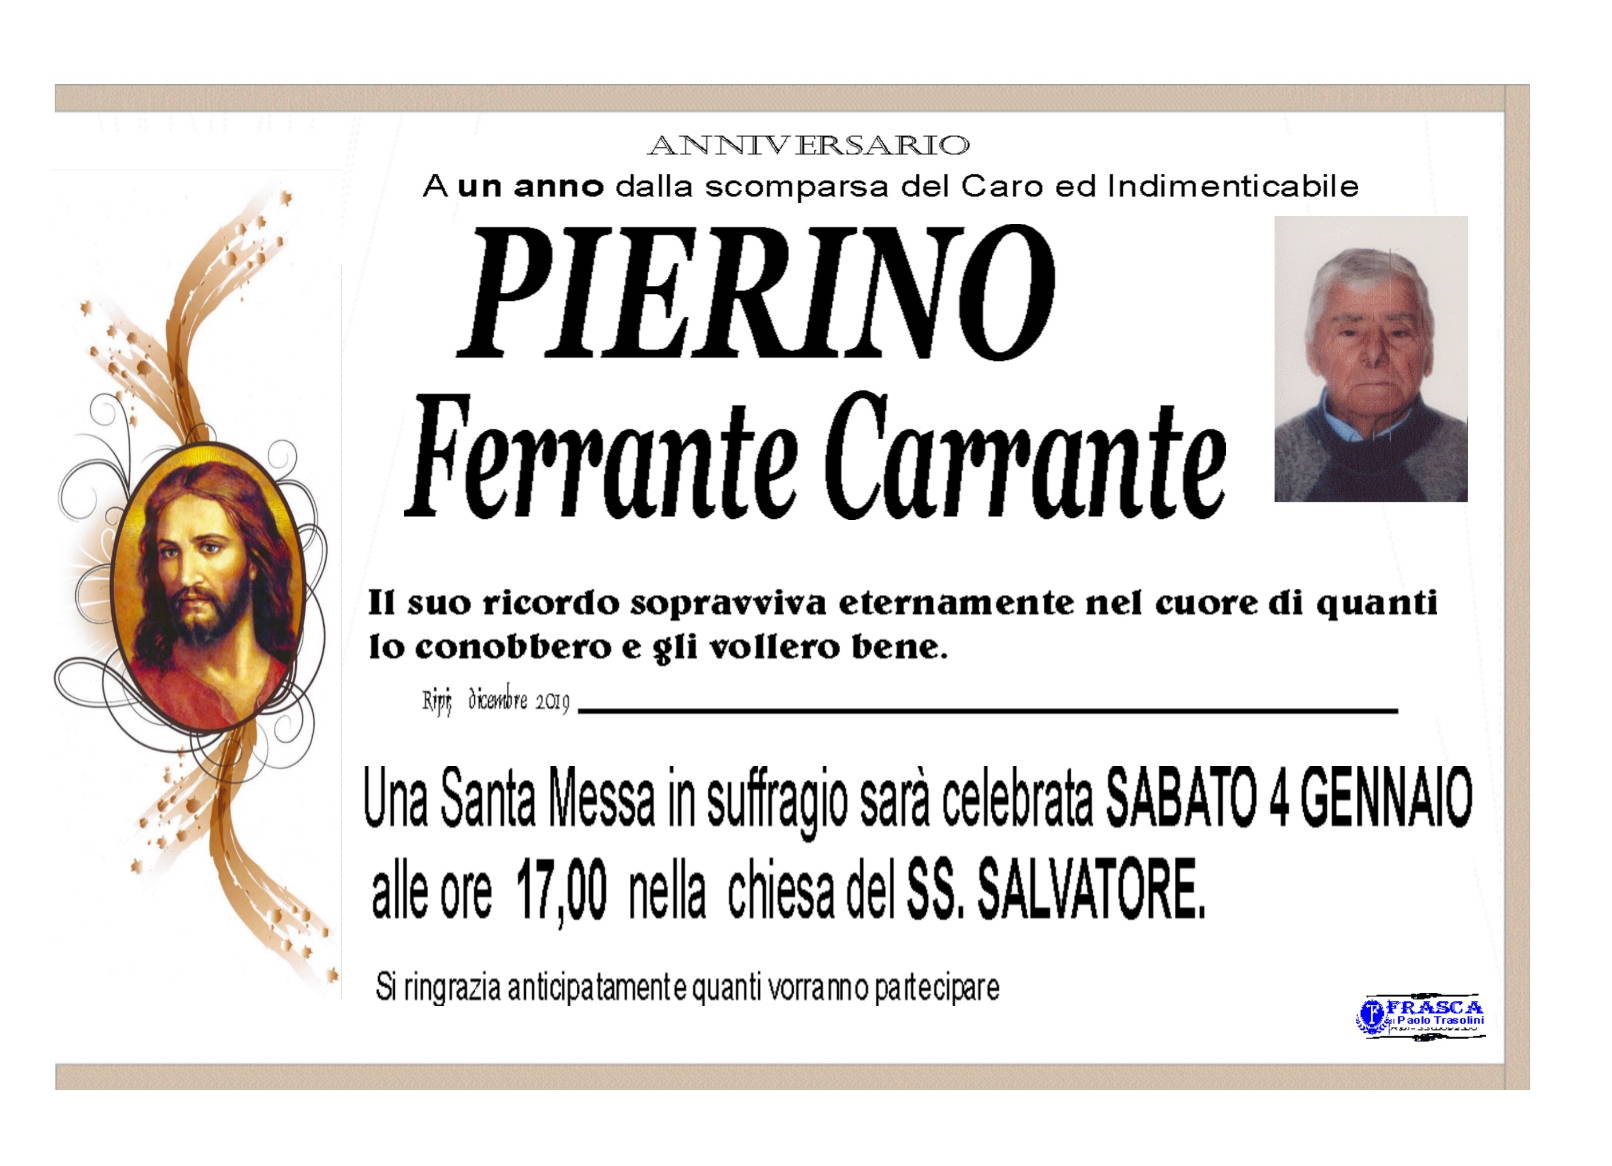 Pierino Ferrante Carrante